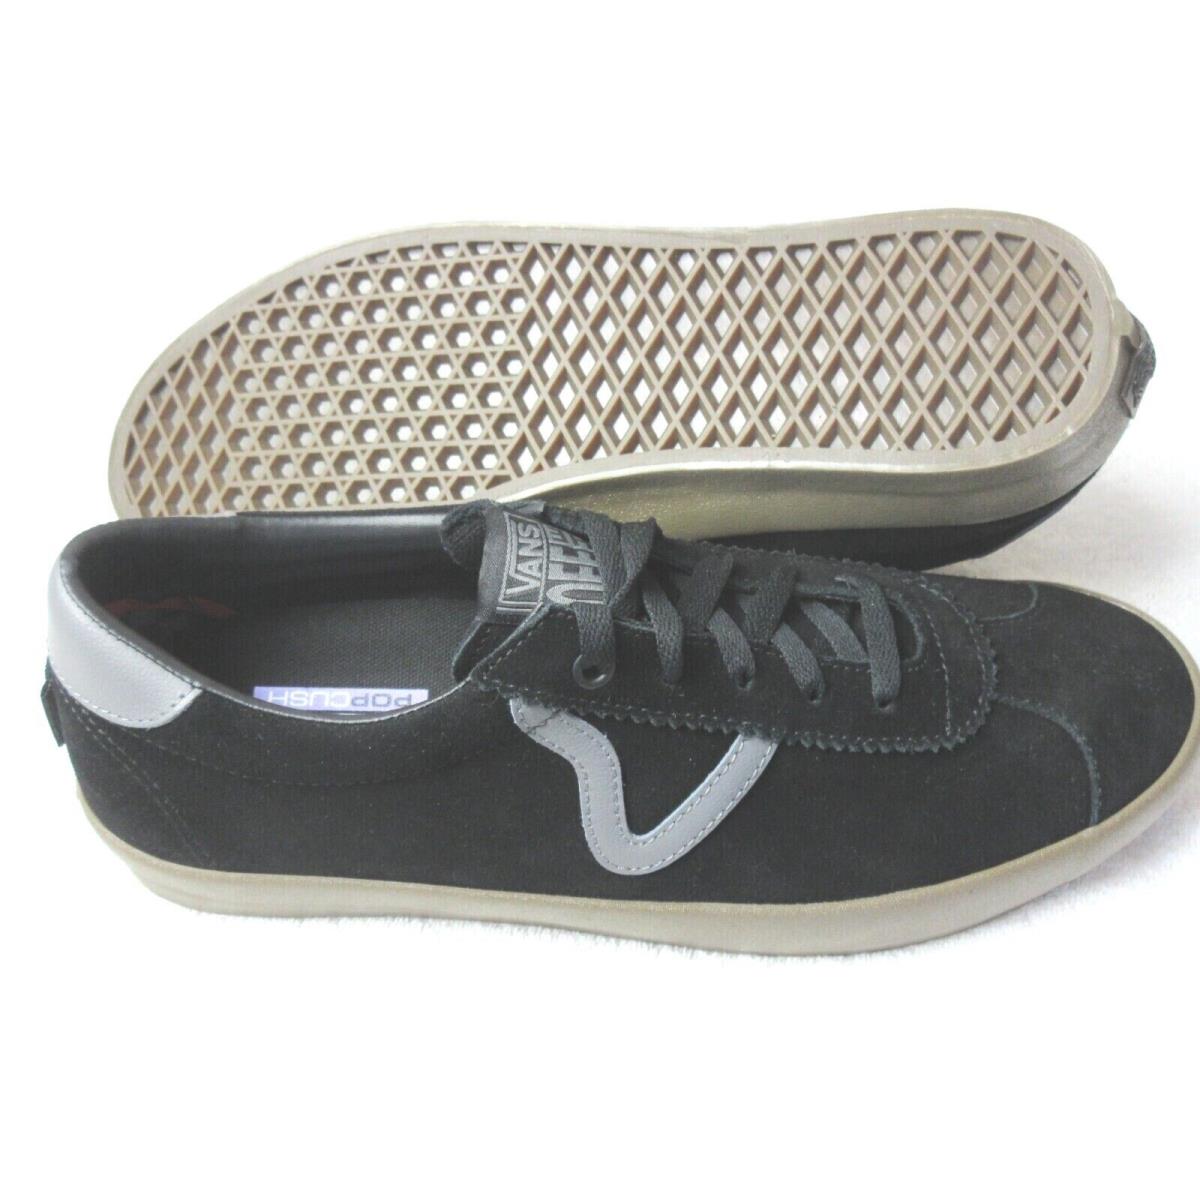 Vans Sport Men`s Black Gum Suede Casual Skate Shoes Size 8.5 VN0A5HEKB9M